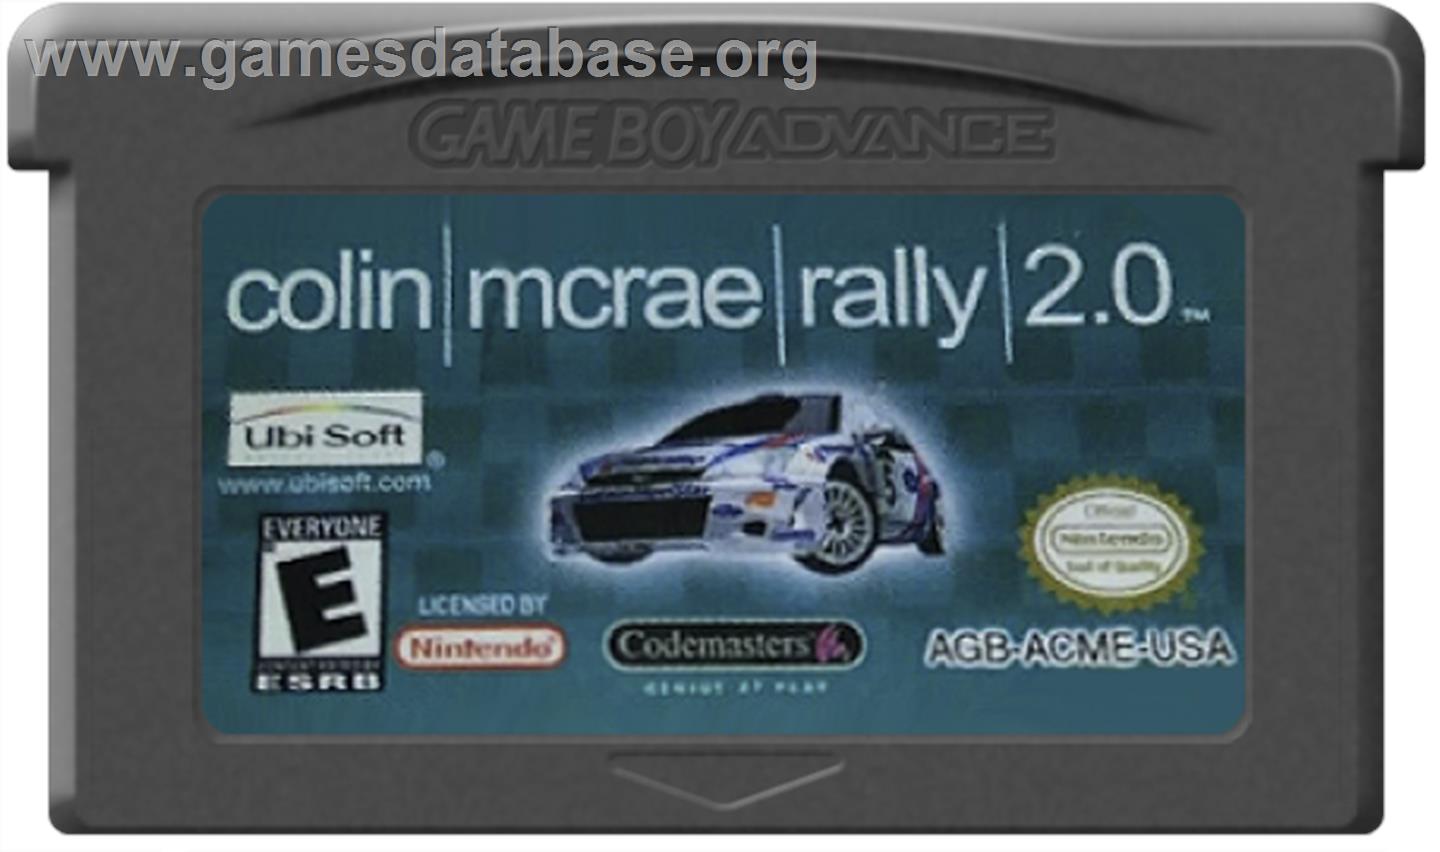 Colin McRae Rally 2.0 - Nintendo Game Boy Advance - Artwork - Cartridge